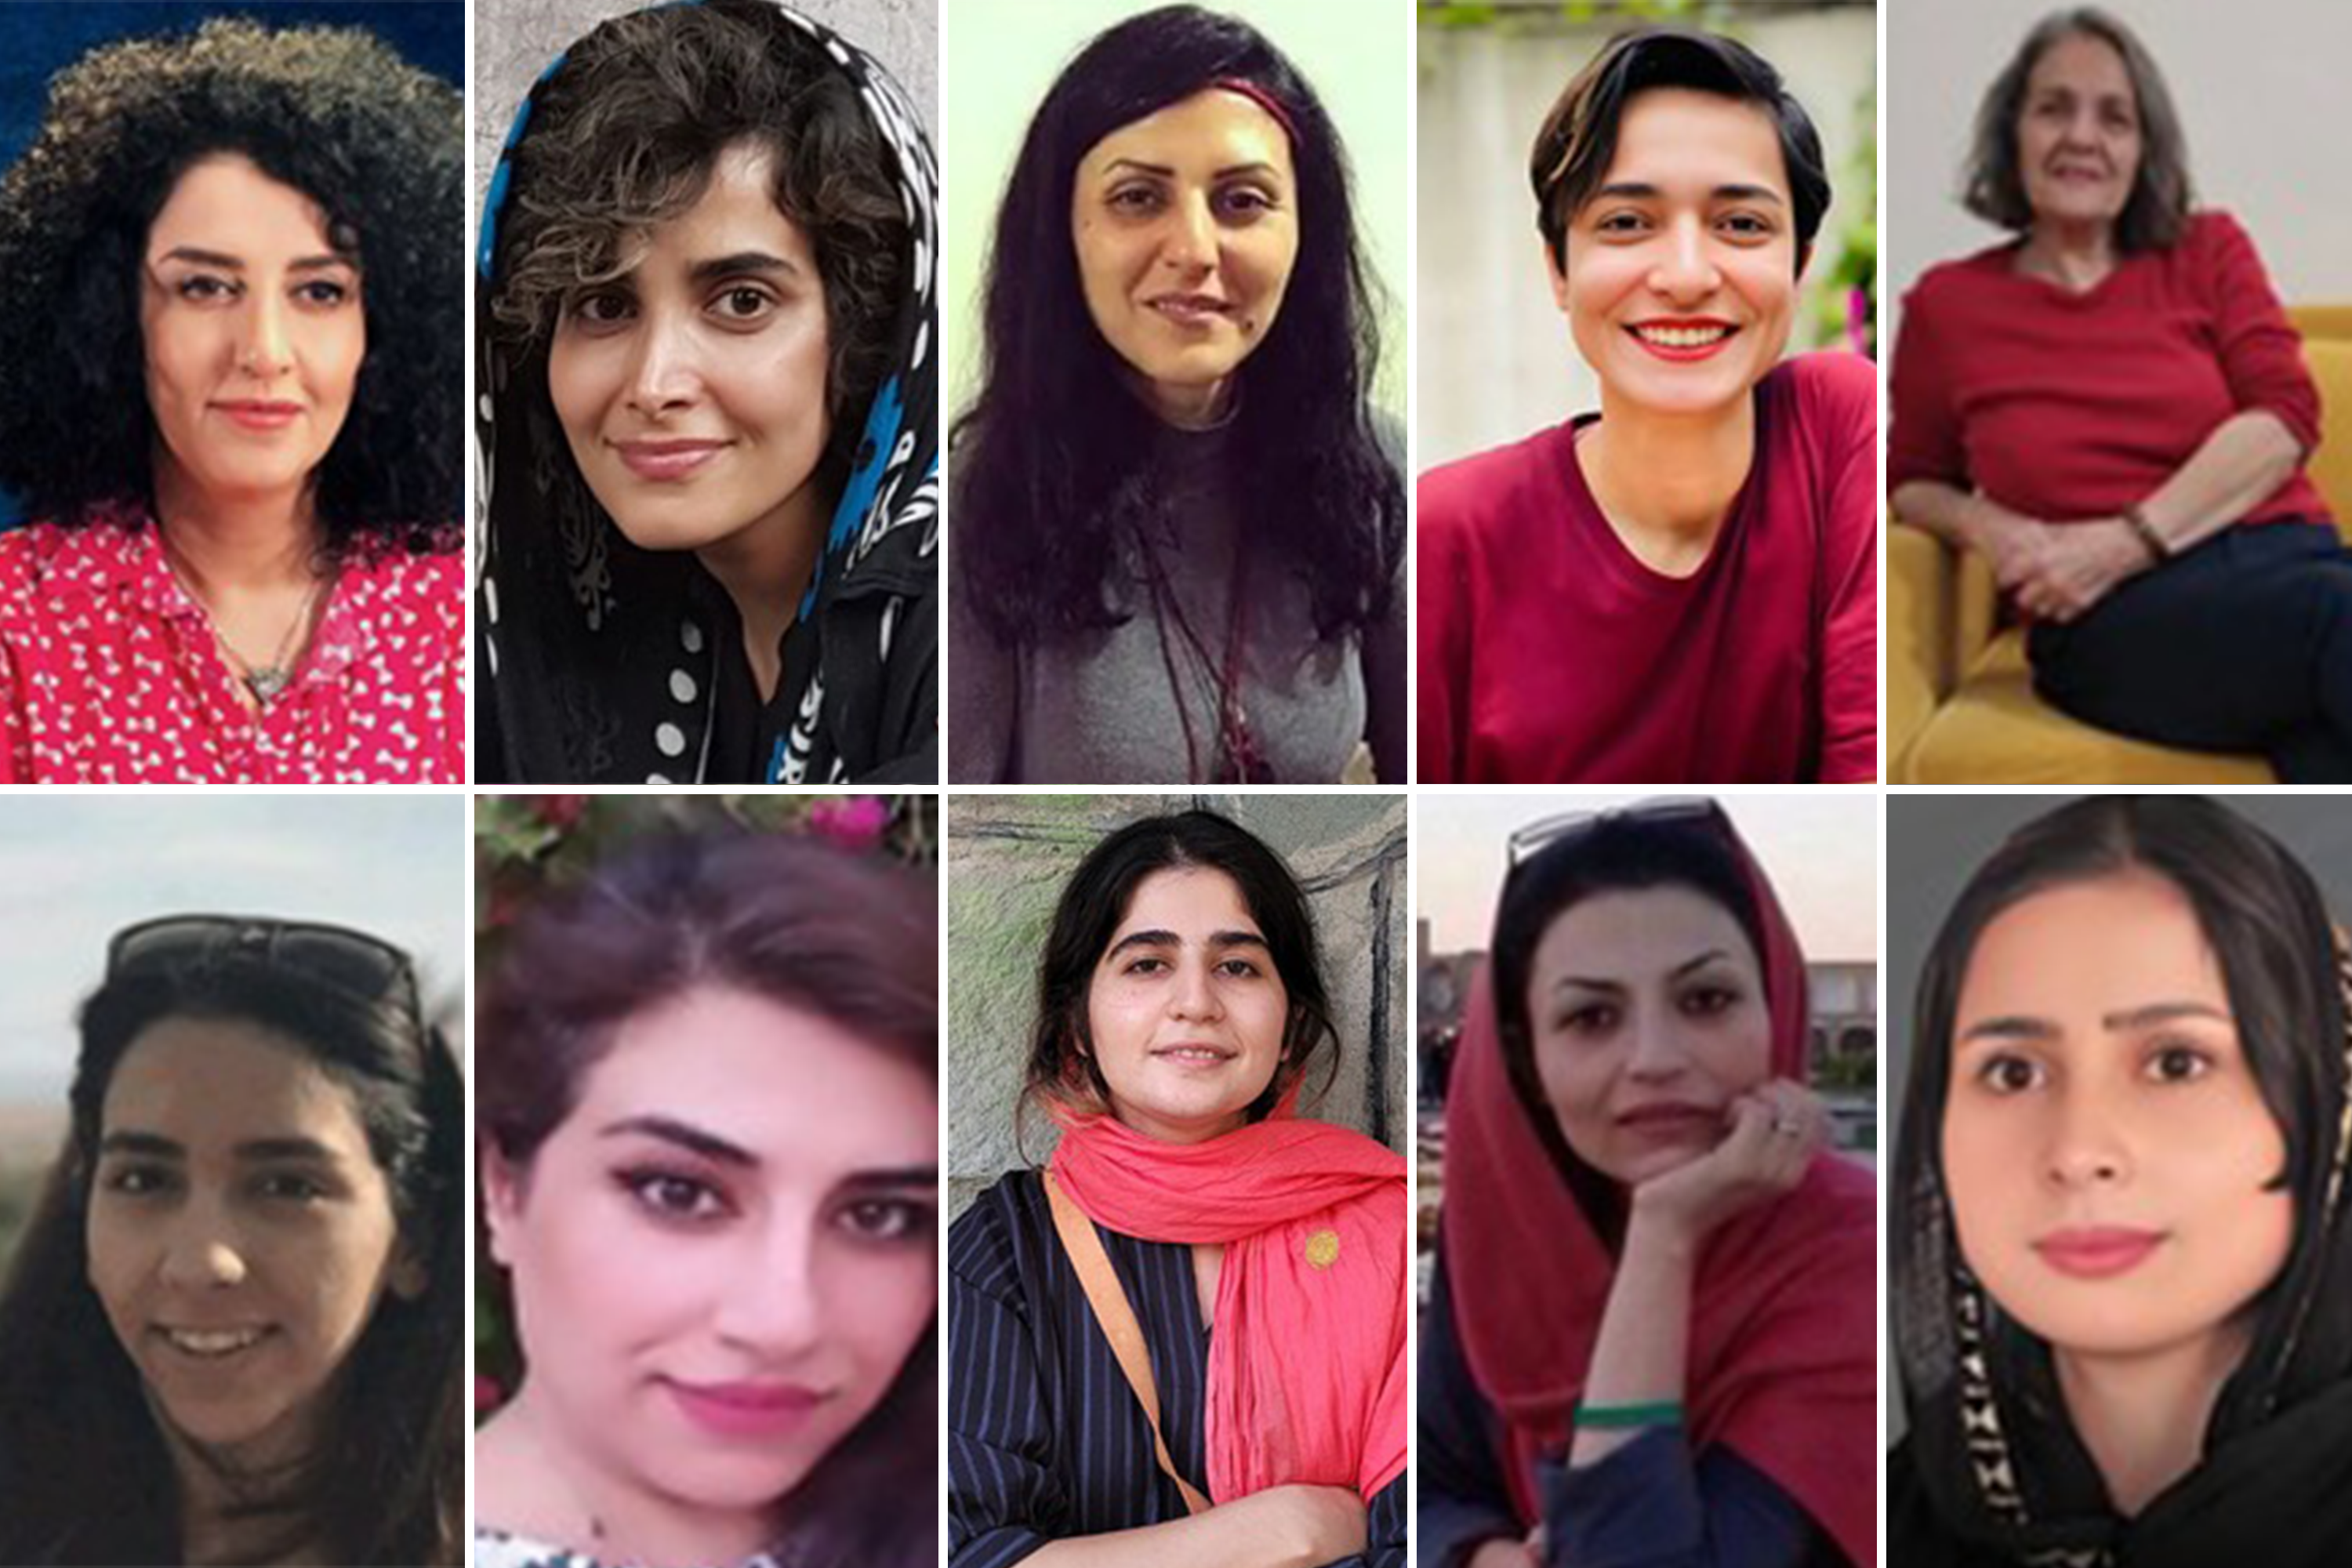 Dans une déclaration émouvante, dix femmes iraniennes emprisonnées à la prison d’Évin à Téhéran ont rendu hommage à dix femmes bahá’íes iraniennes emprisonnées quatre décennies plus tôt, dans la prison d'Adel Abad à Chiraz.